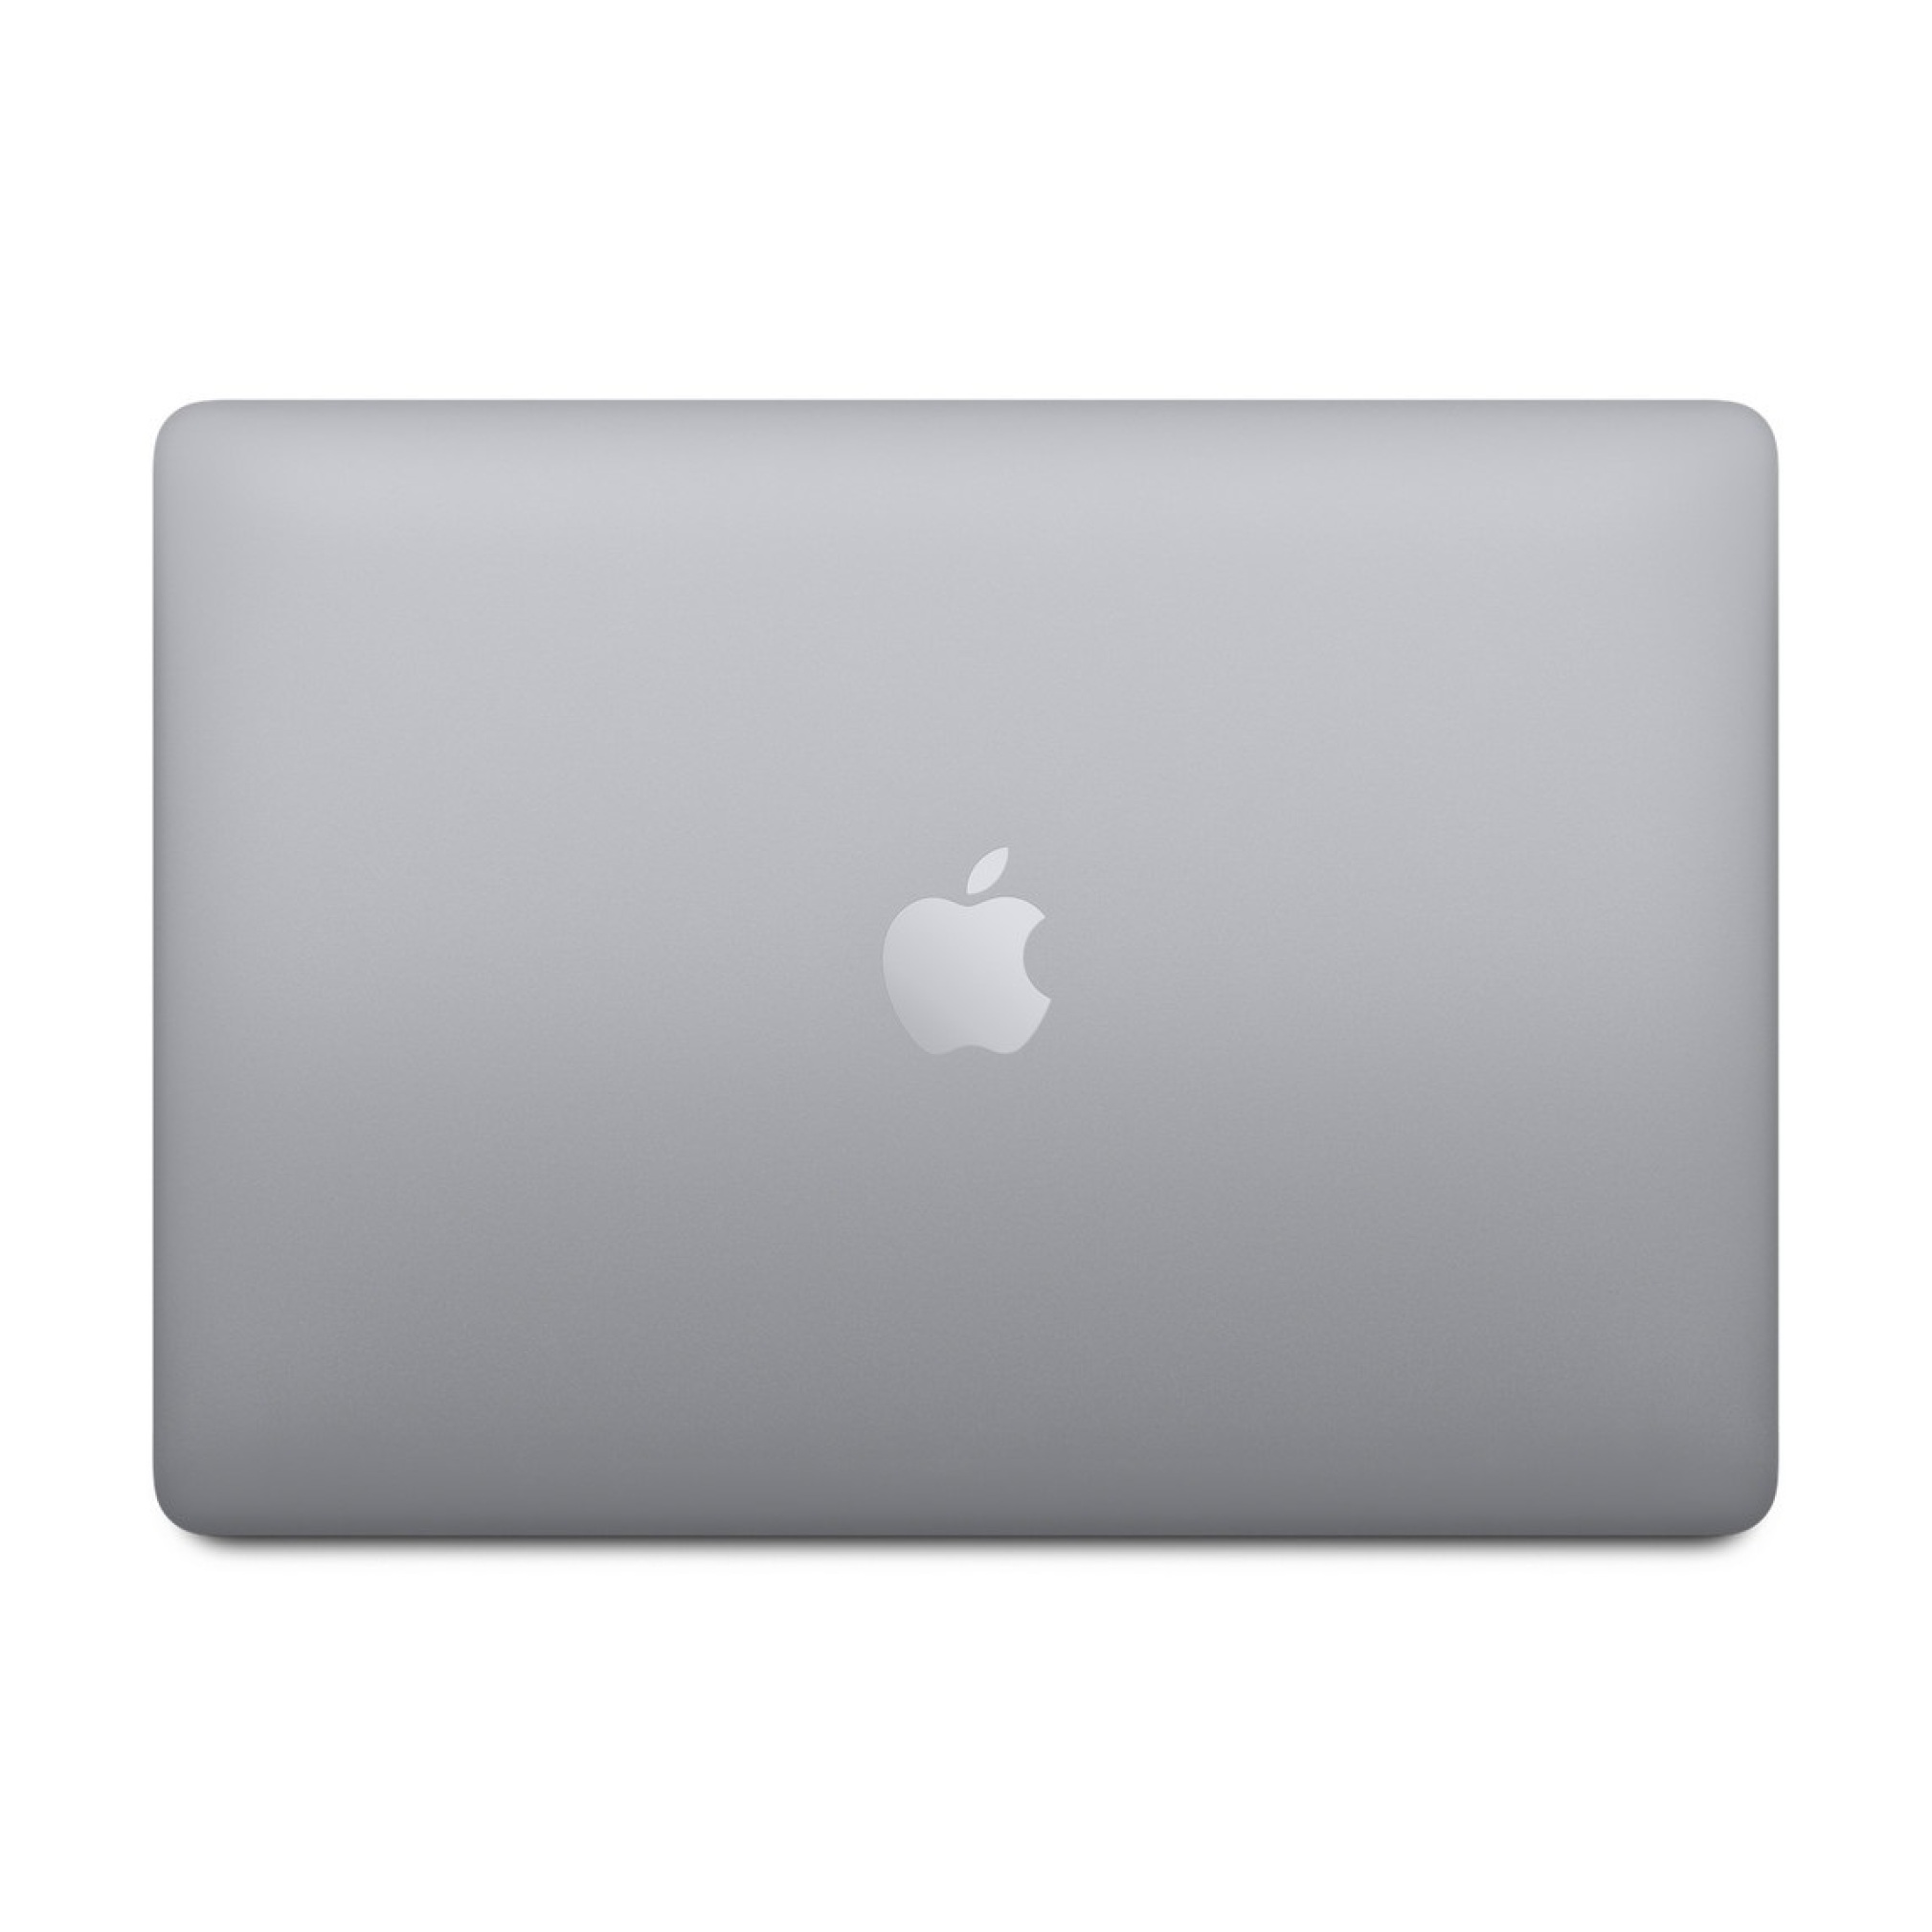  مک بوک پرو a1502 - لپ تاپ مک بوک پرو 13 اینچی 2015 | لاکچری لپ تاپ 